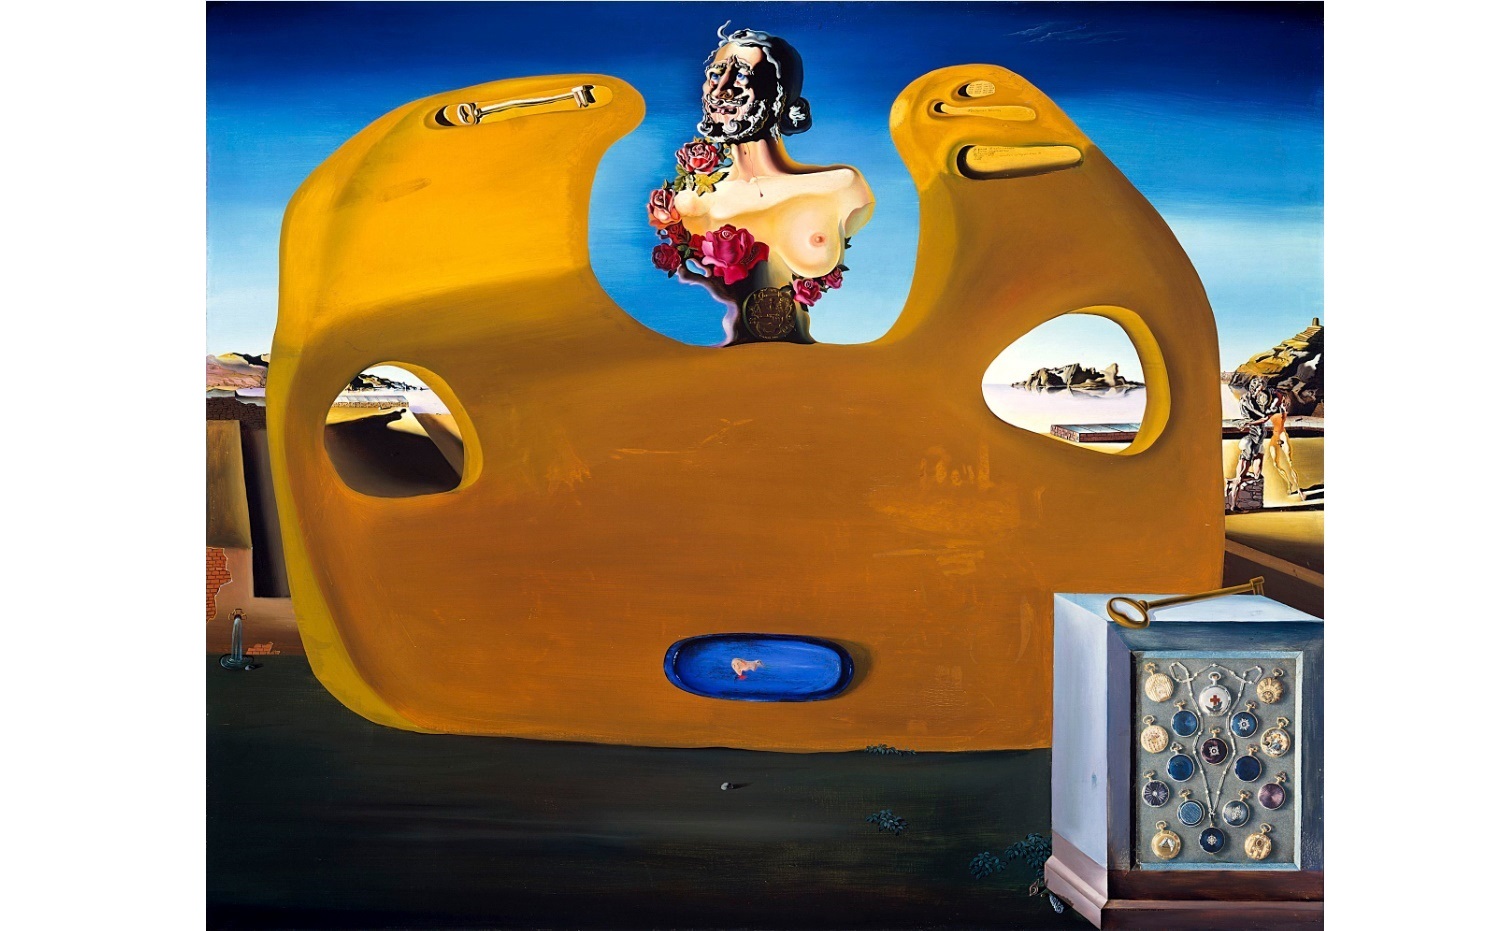 Exponen piezas emblemáticas de Dalí en Madrid